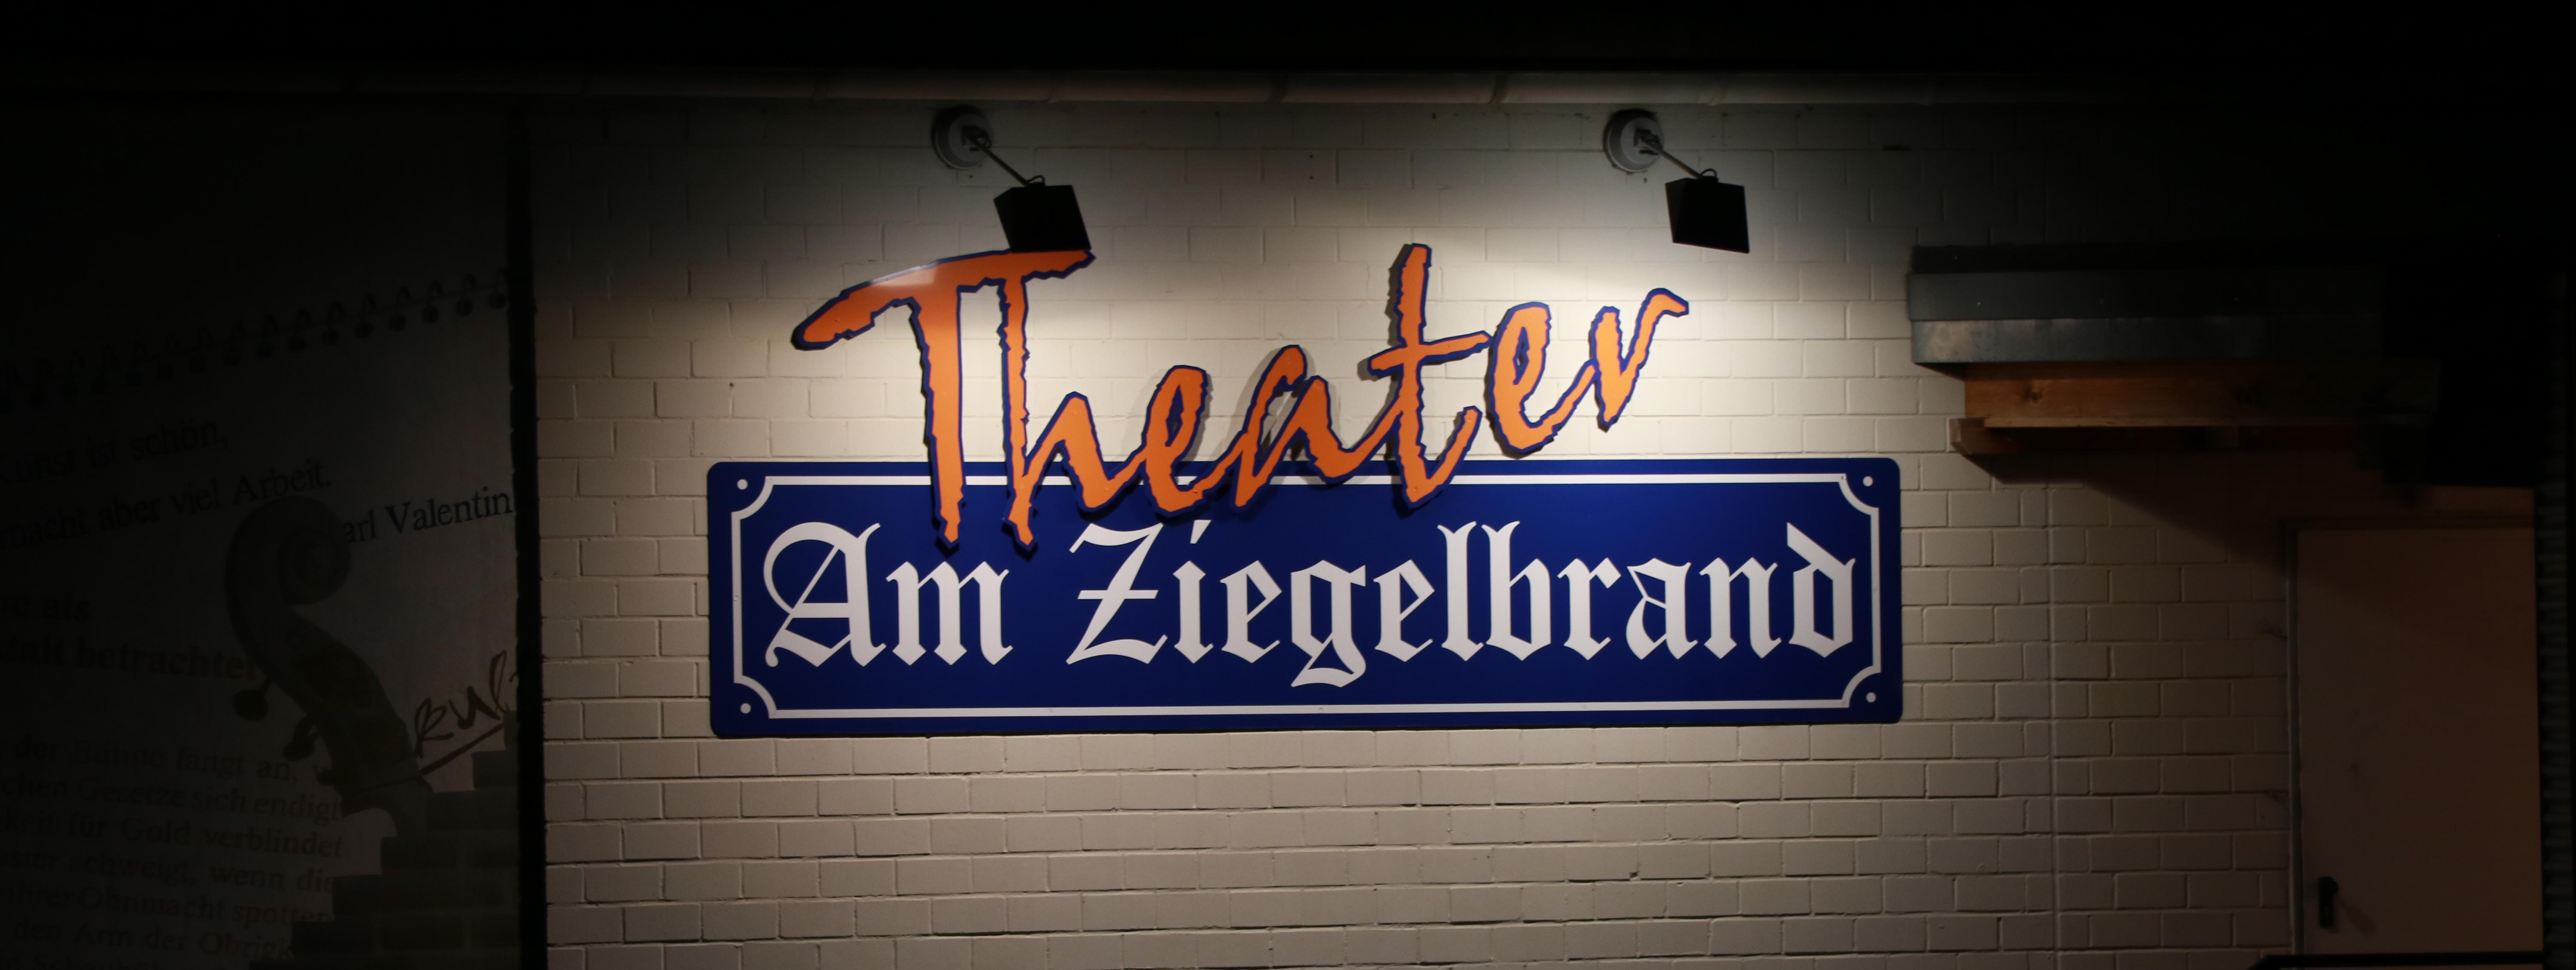 Das Theater Am Ziegelbrand von aussen bei Nacht. Zu sehen ist der beleuchtete Schriftzug am Gebäude.